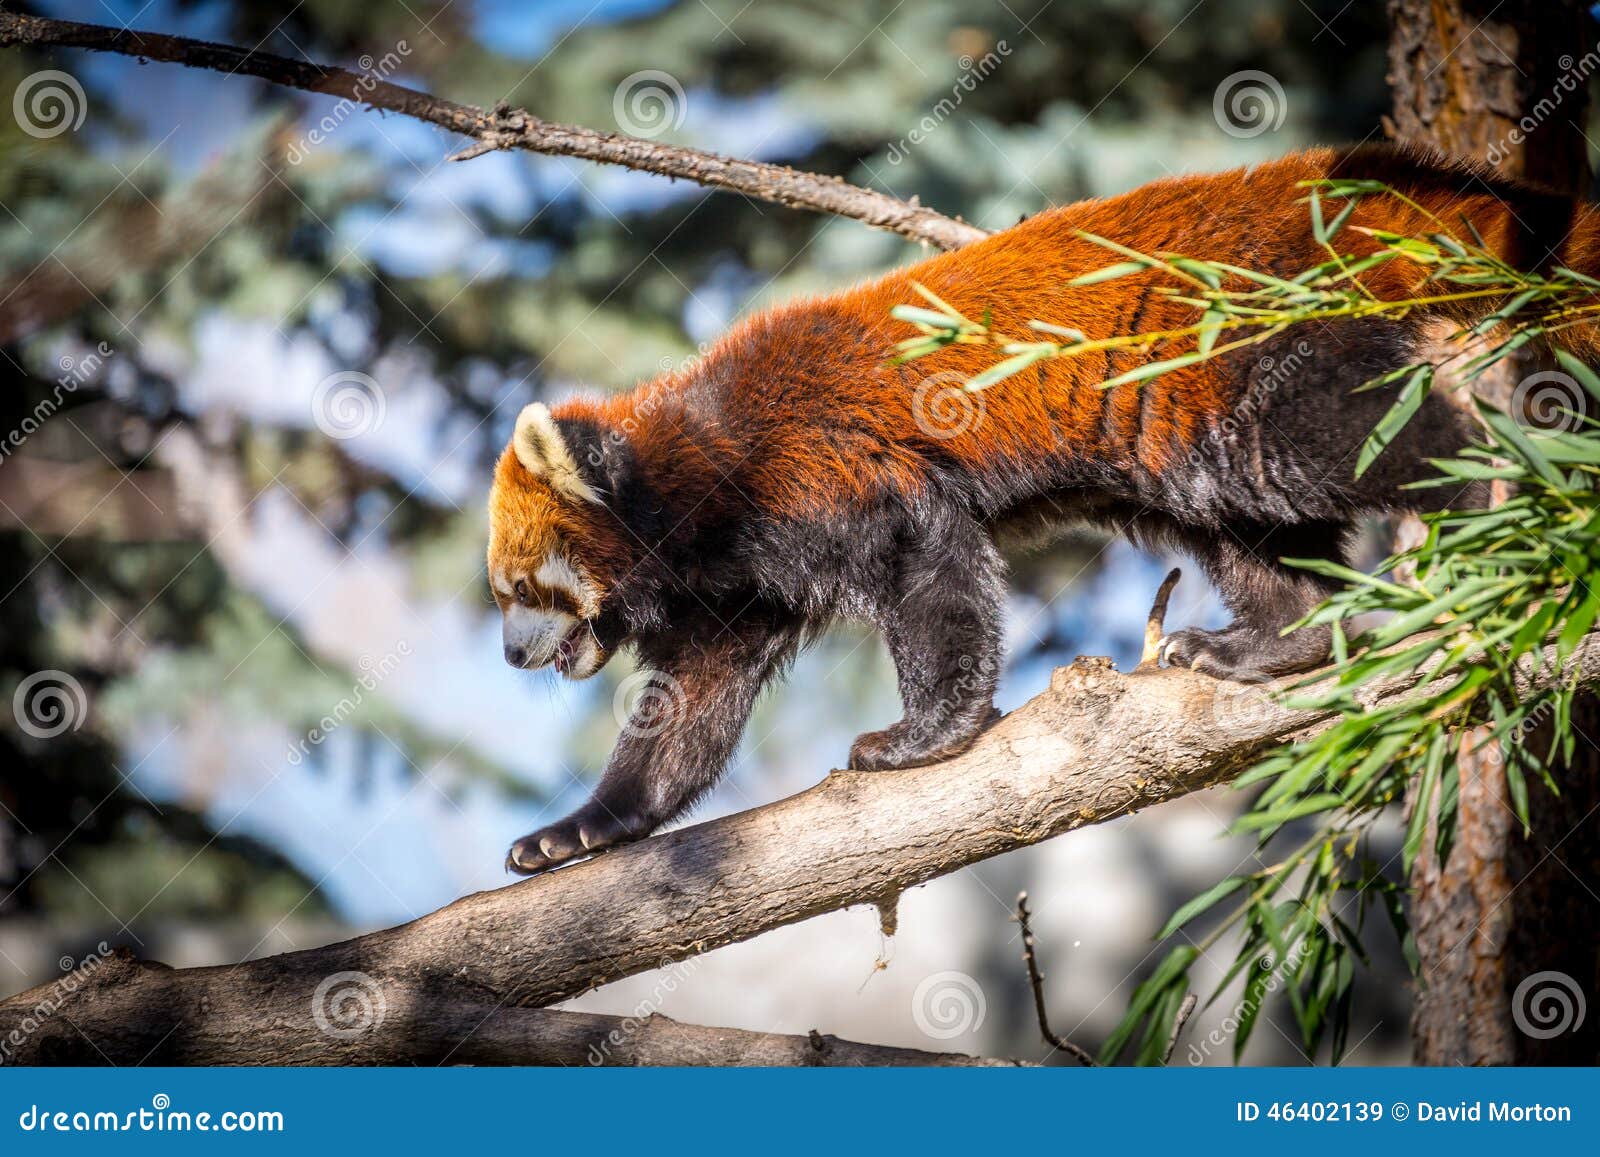 Rode panda stock afbeelding. Image of gevangene, groen - 46402139